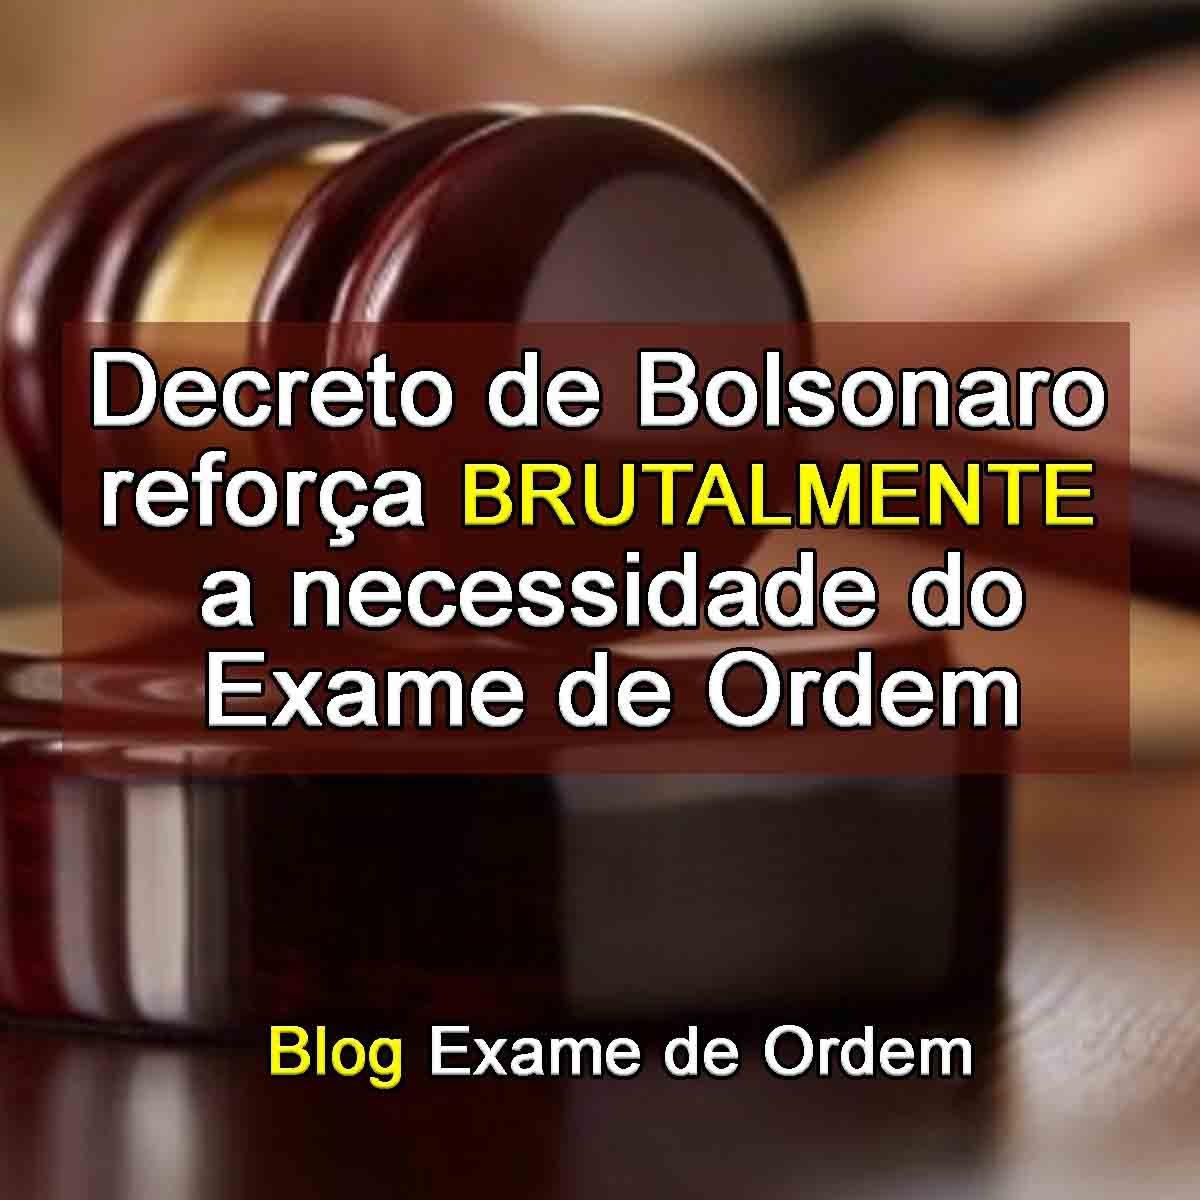 Decreto de Bolsonaro reforça brutalmente a necessidade do Exame de Ordem